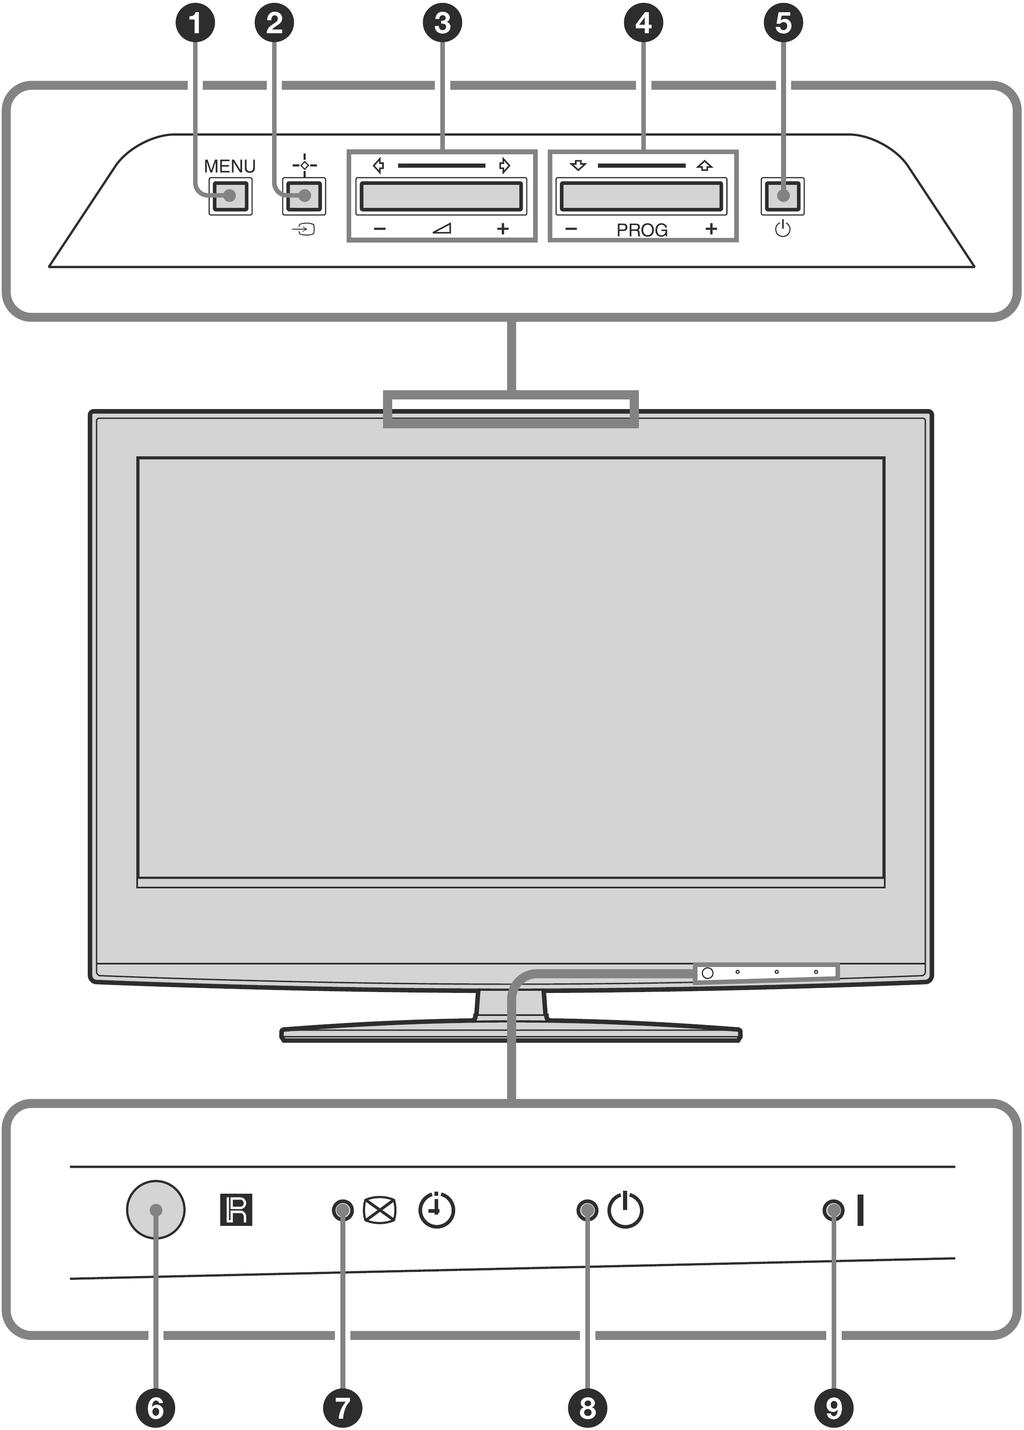 Pregled tipaka i indikatora na TV prijemniku A MENU (stranica 19) B t/` Odabir izvora ulaznog signala/ok U TV načinu (stranica 18): Odabir izvora ulaznog signala opreme spojene na priključnice TV